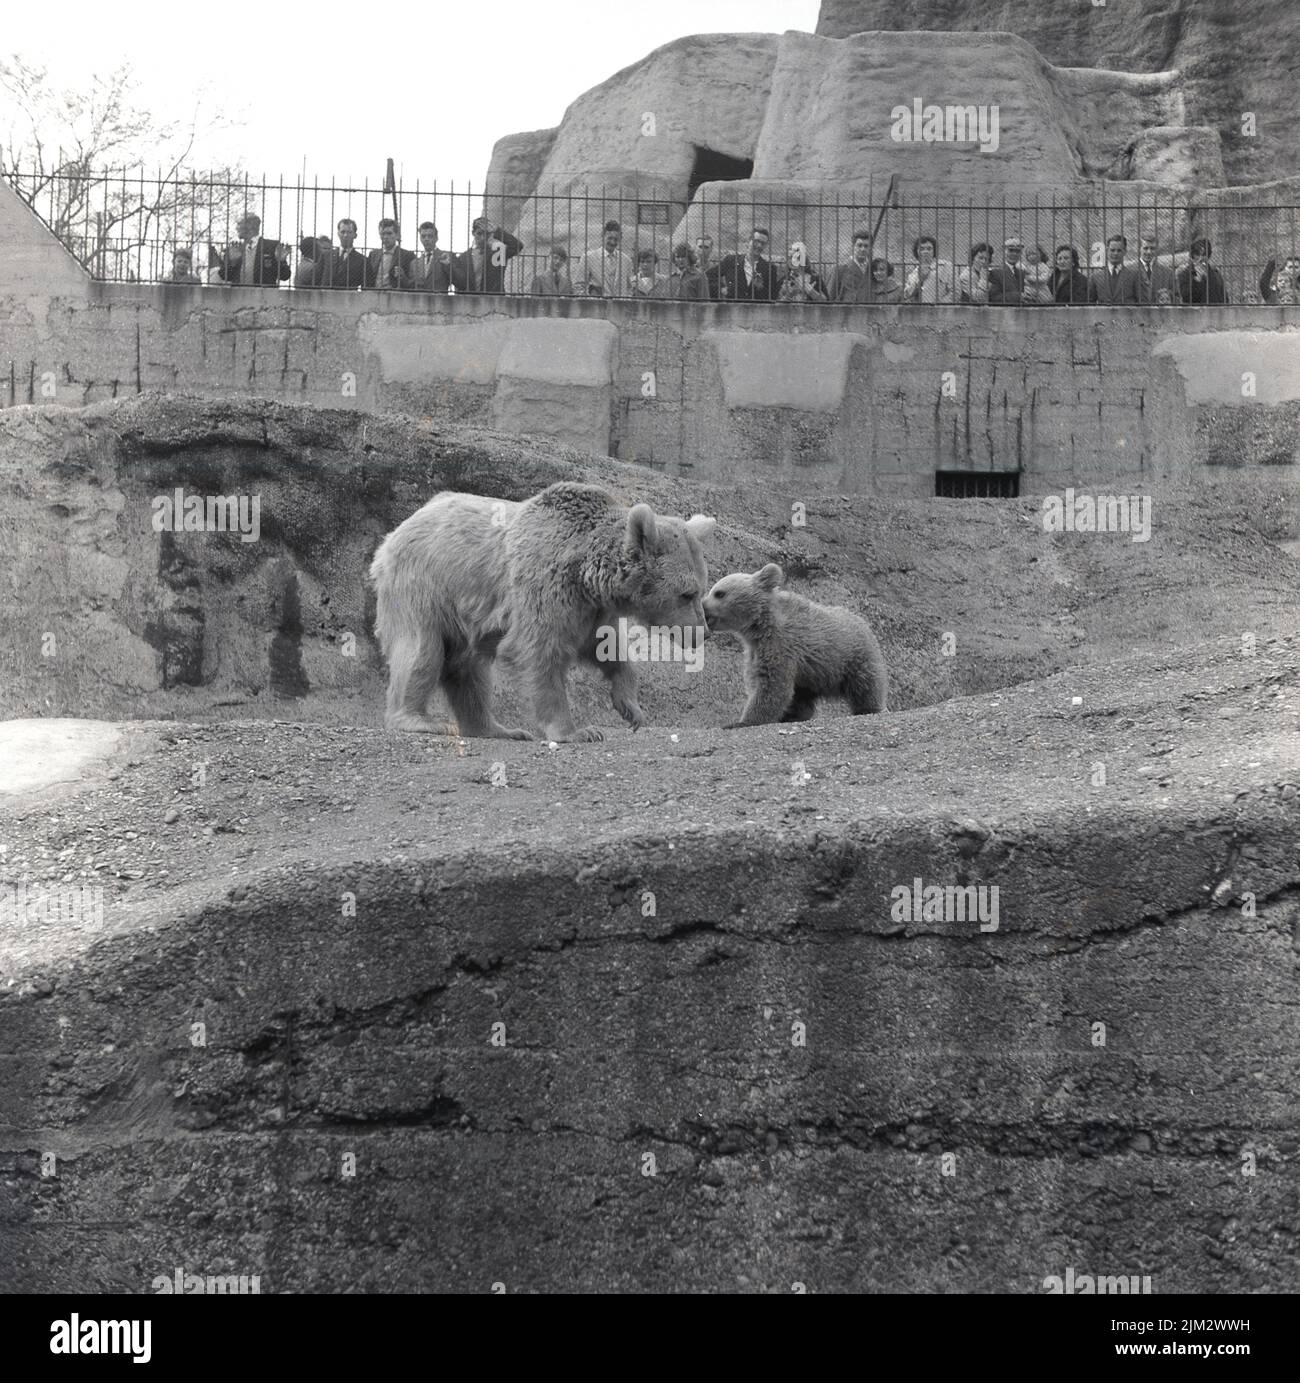 1960s, histórico, en las terrazas Mappin del Zoo de Londres, un oso polar con cachorro, con visitantes mirando hacia abajo. La capa de la madre ha sido cortada a mitad de camino en su cuerpo. Las terrazas fueron construidas entre 1913-1914 con hormigón armado y estas escarpadas montañas de imitación, diseñadas para crear un ambiente más natural para los animales cautivos, fueron innovadoras para la época. Foto de stock